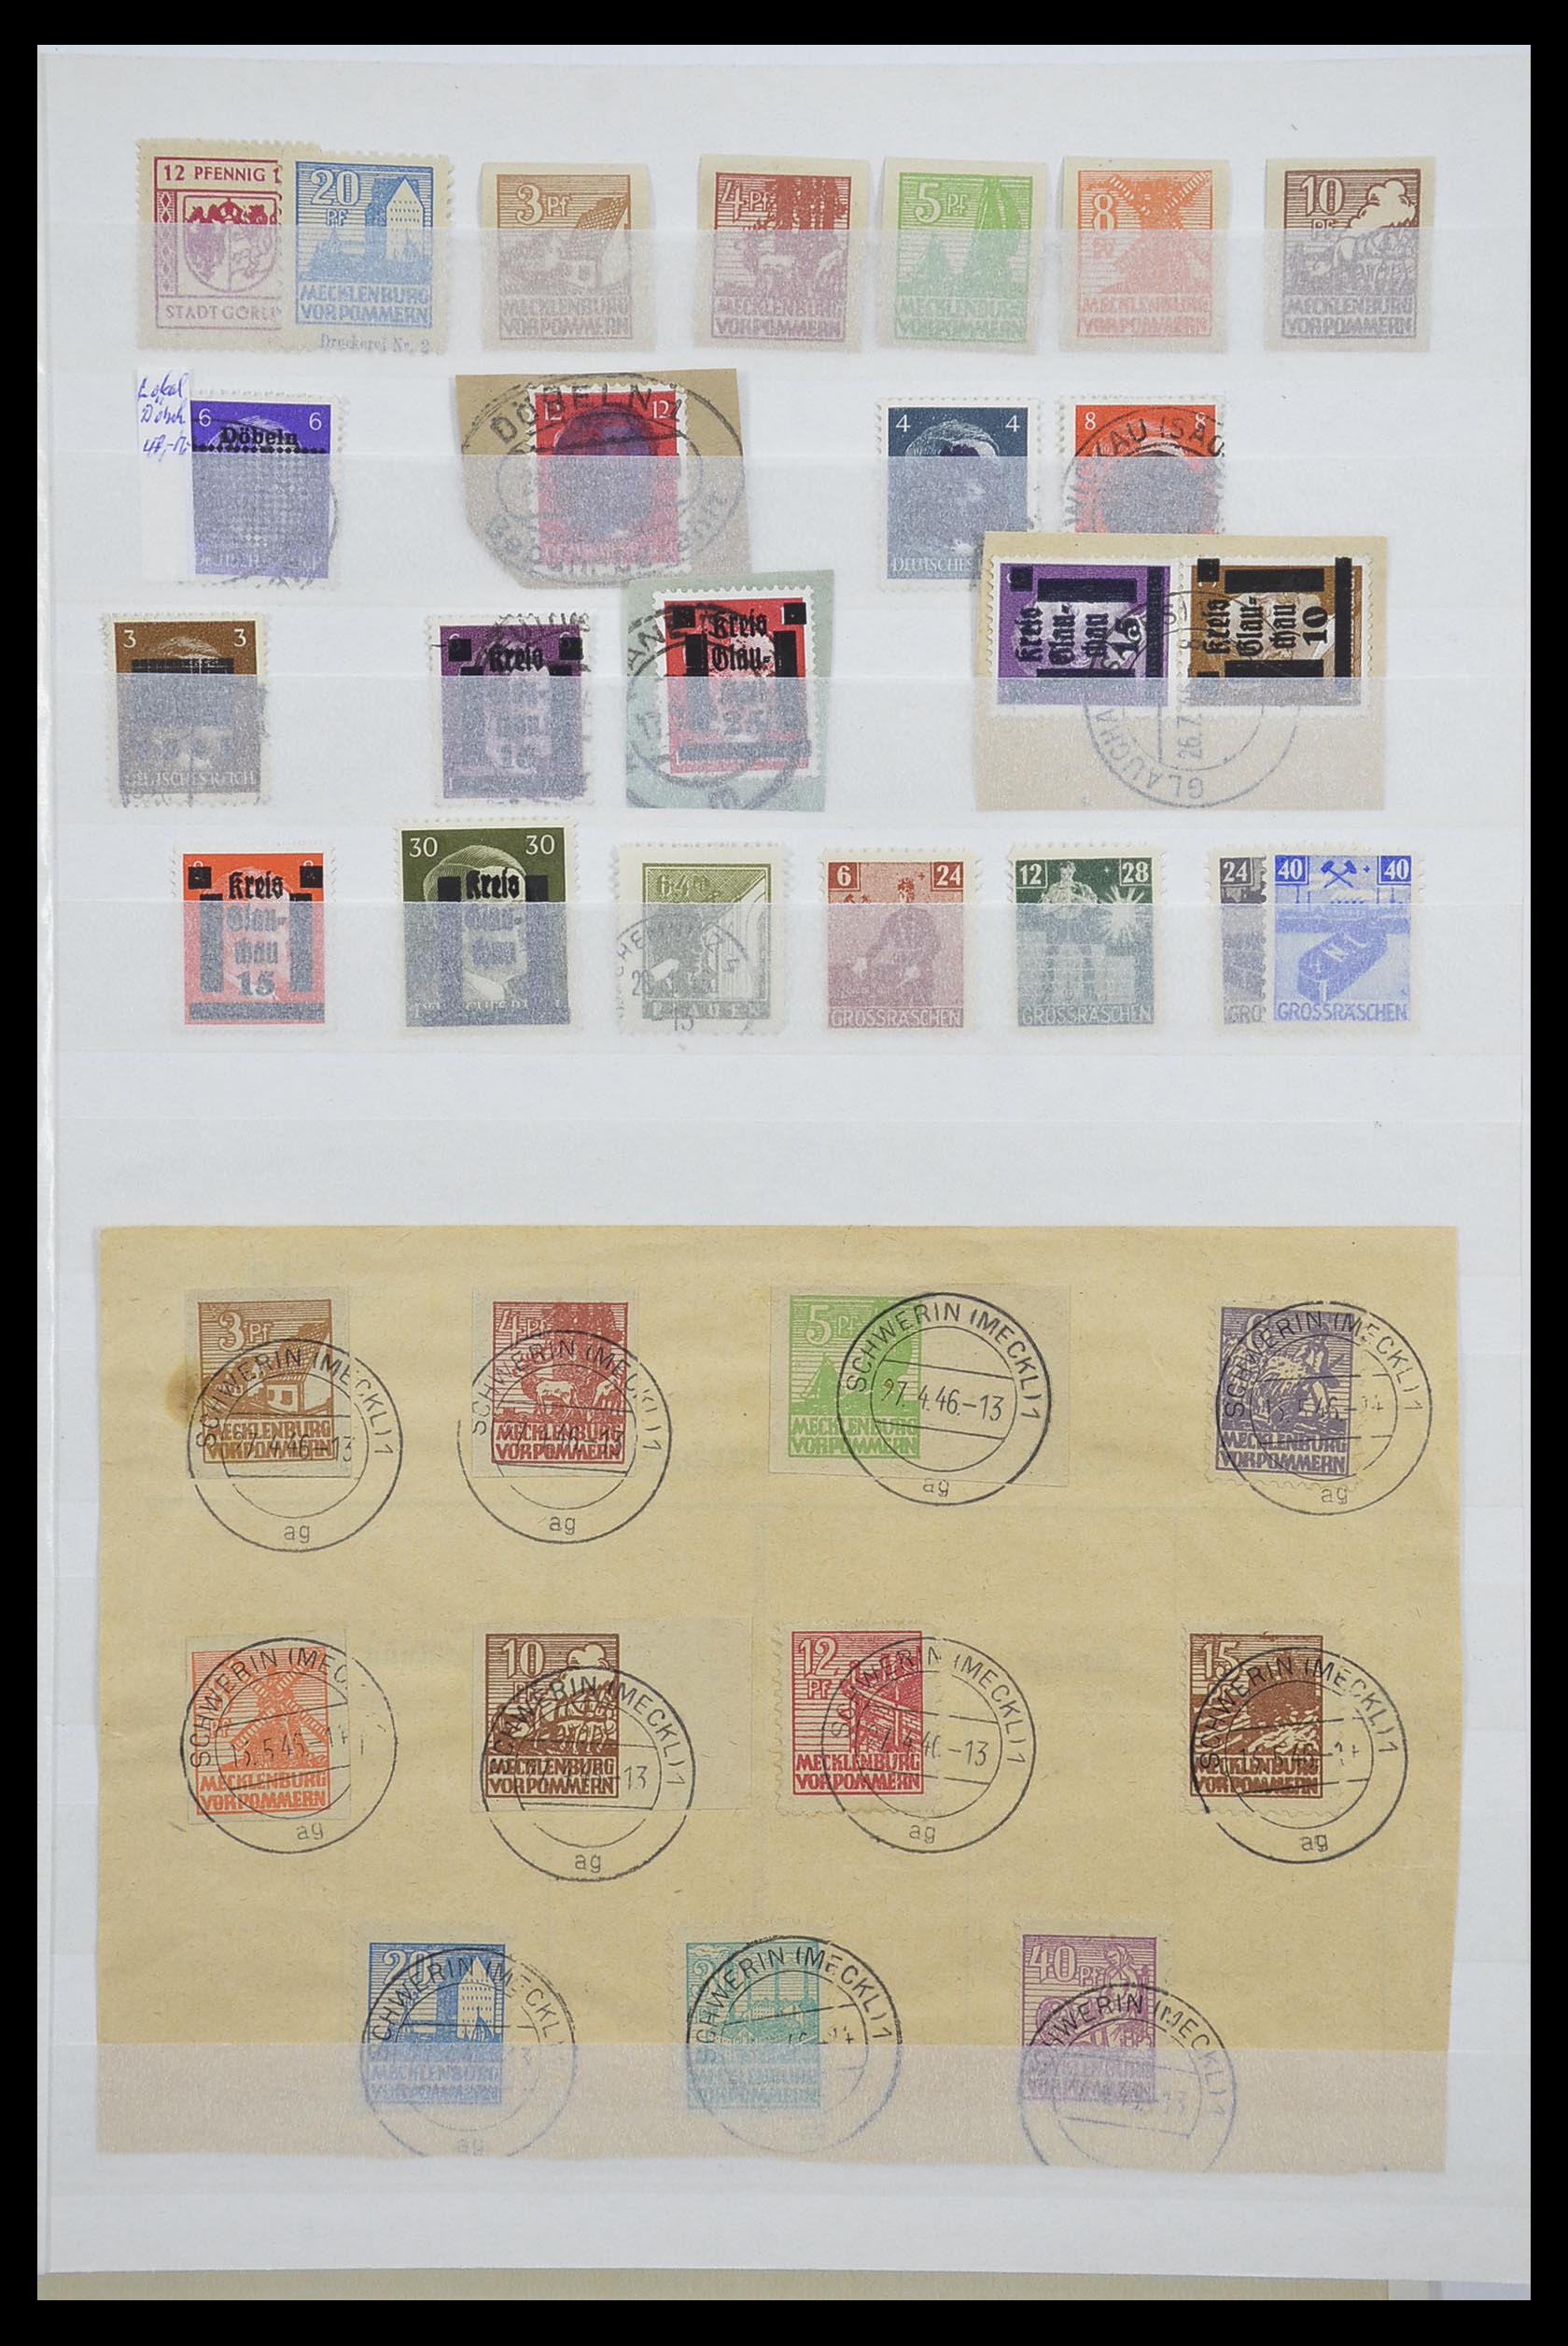 33268 001 - Postzegelverzameling 33268 Duitse lokaalpost en Sovjetzone 1945-1949.